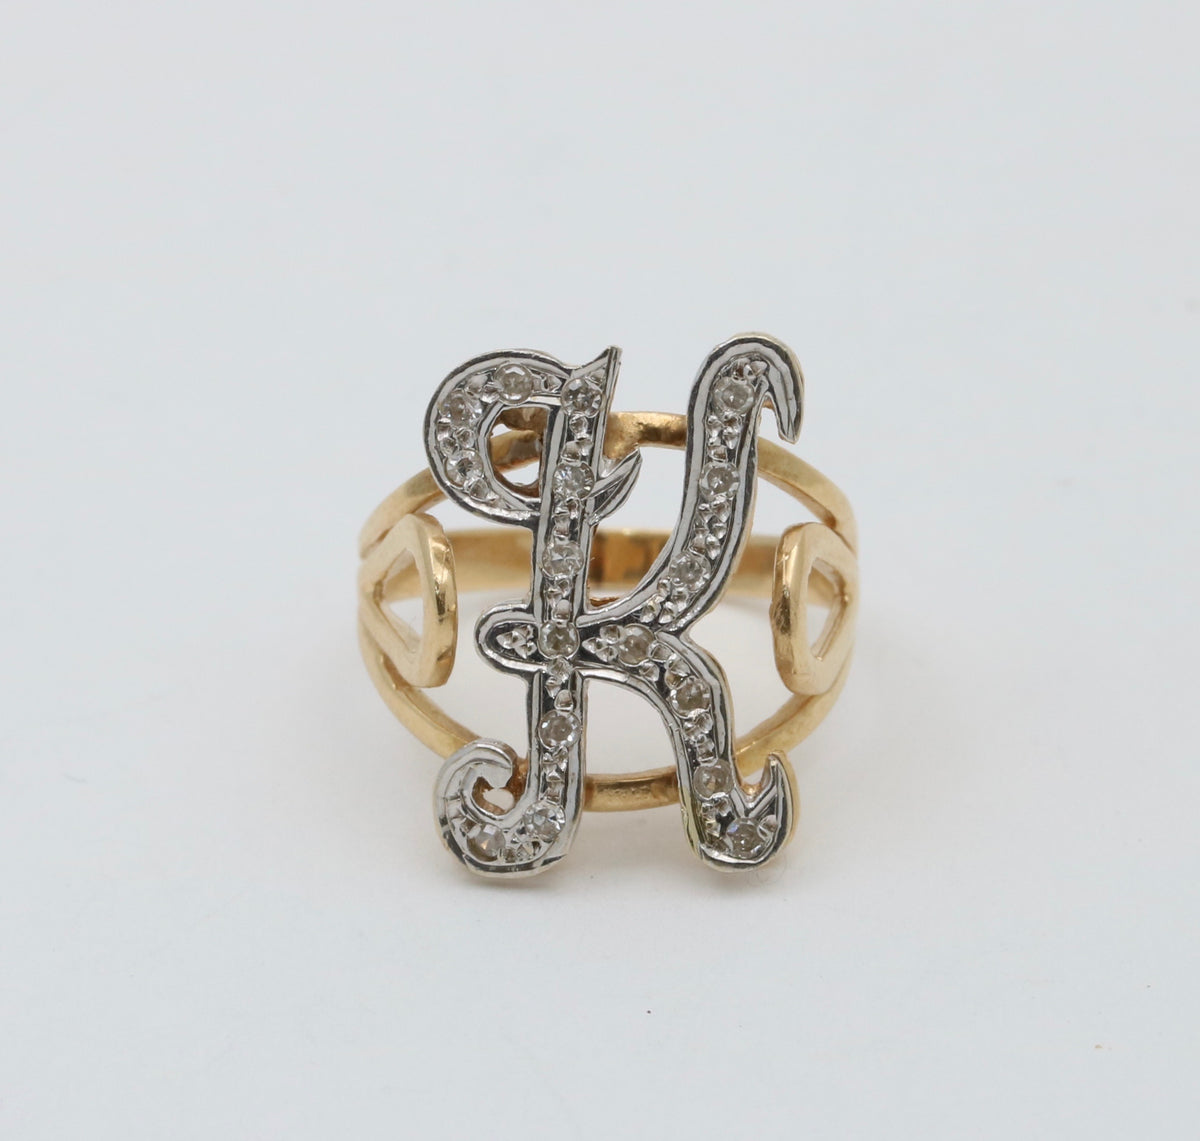 Vintage 14K Gold Initial “K” Ring